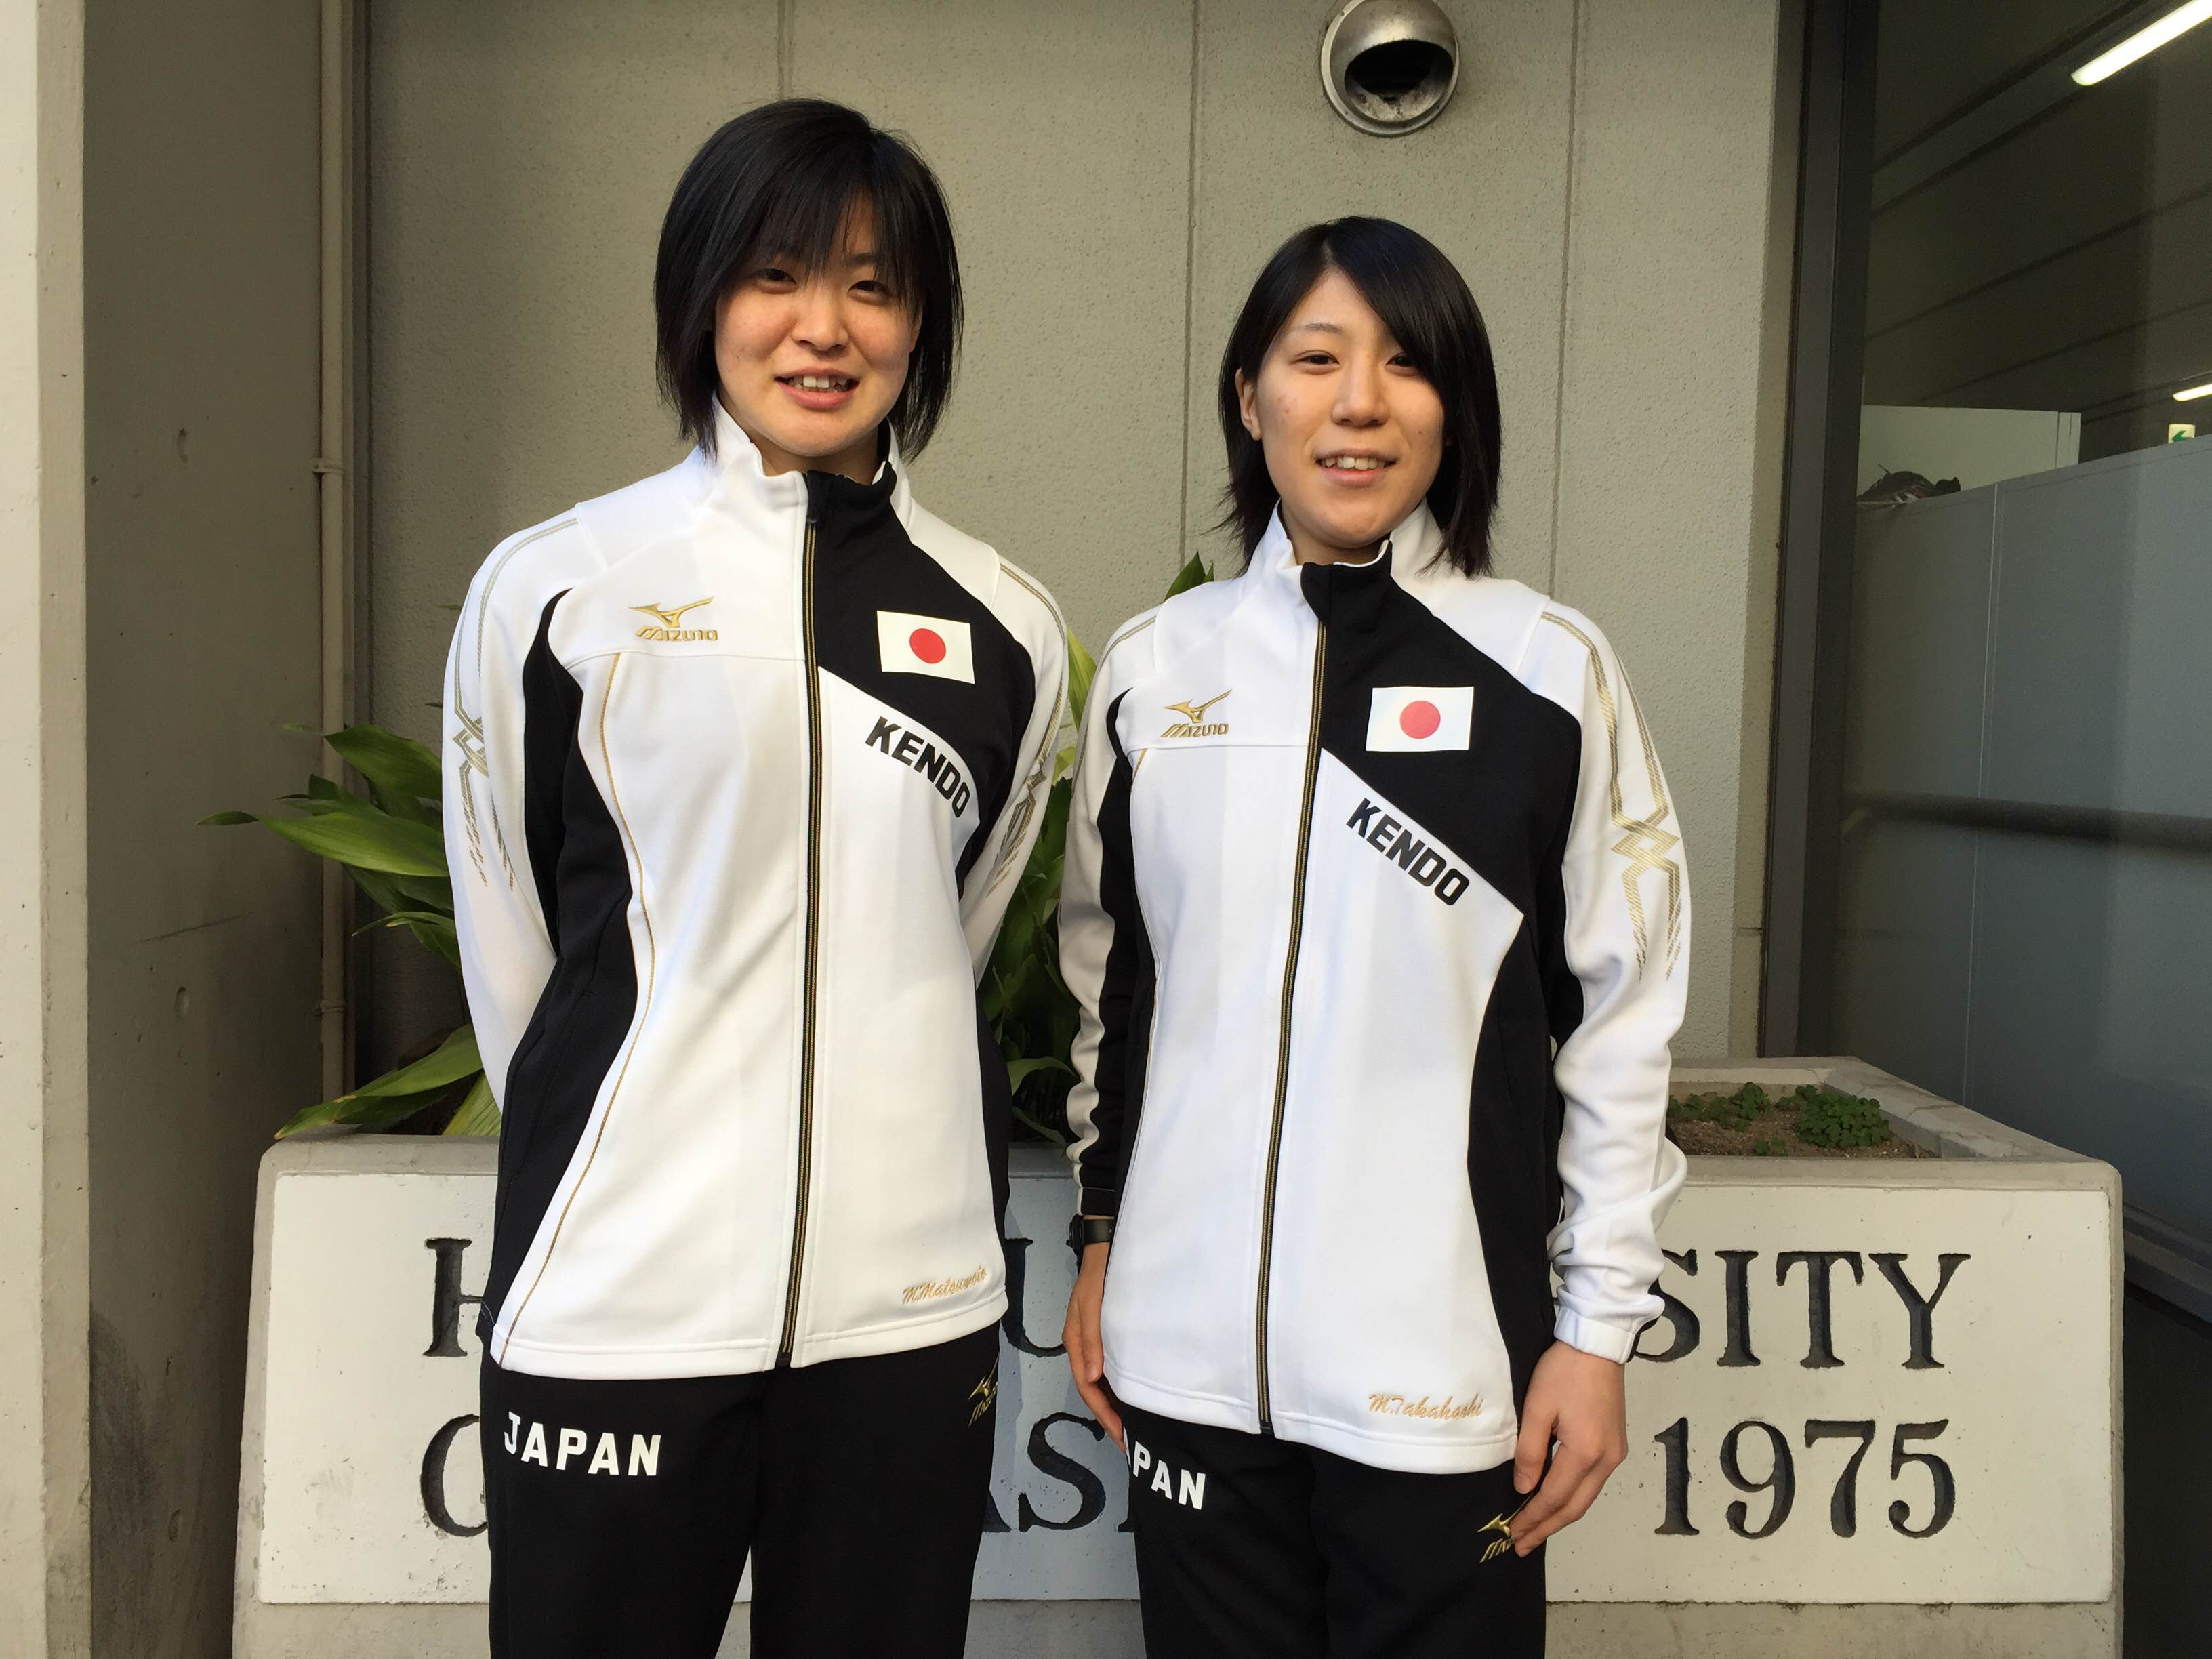 本学部員２名が二大会連続で世界剣道選手権女子代表に選出されました